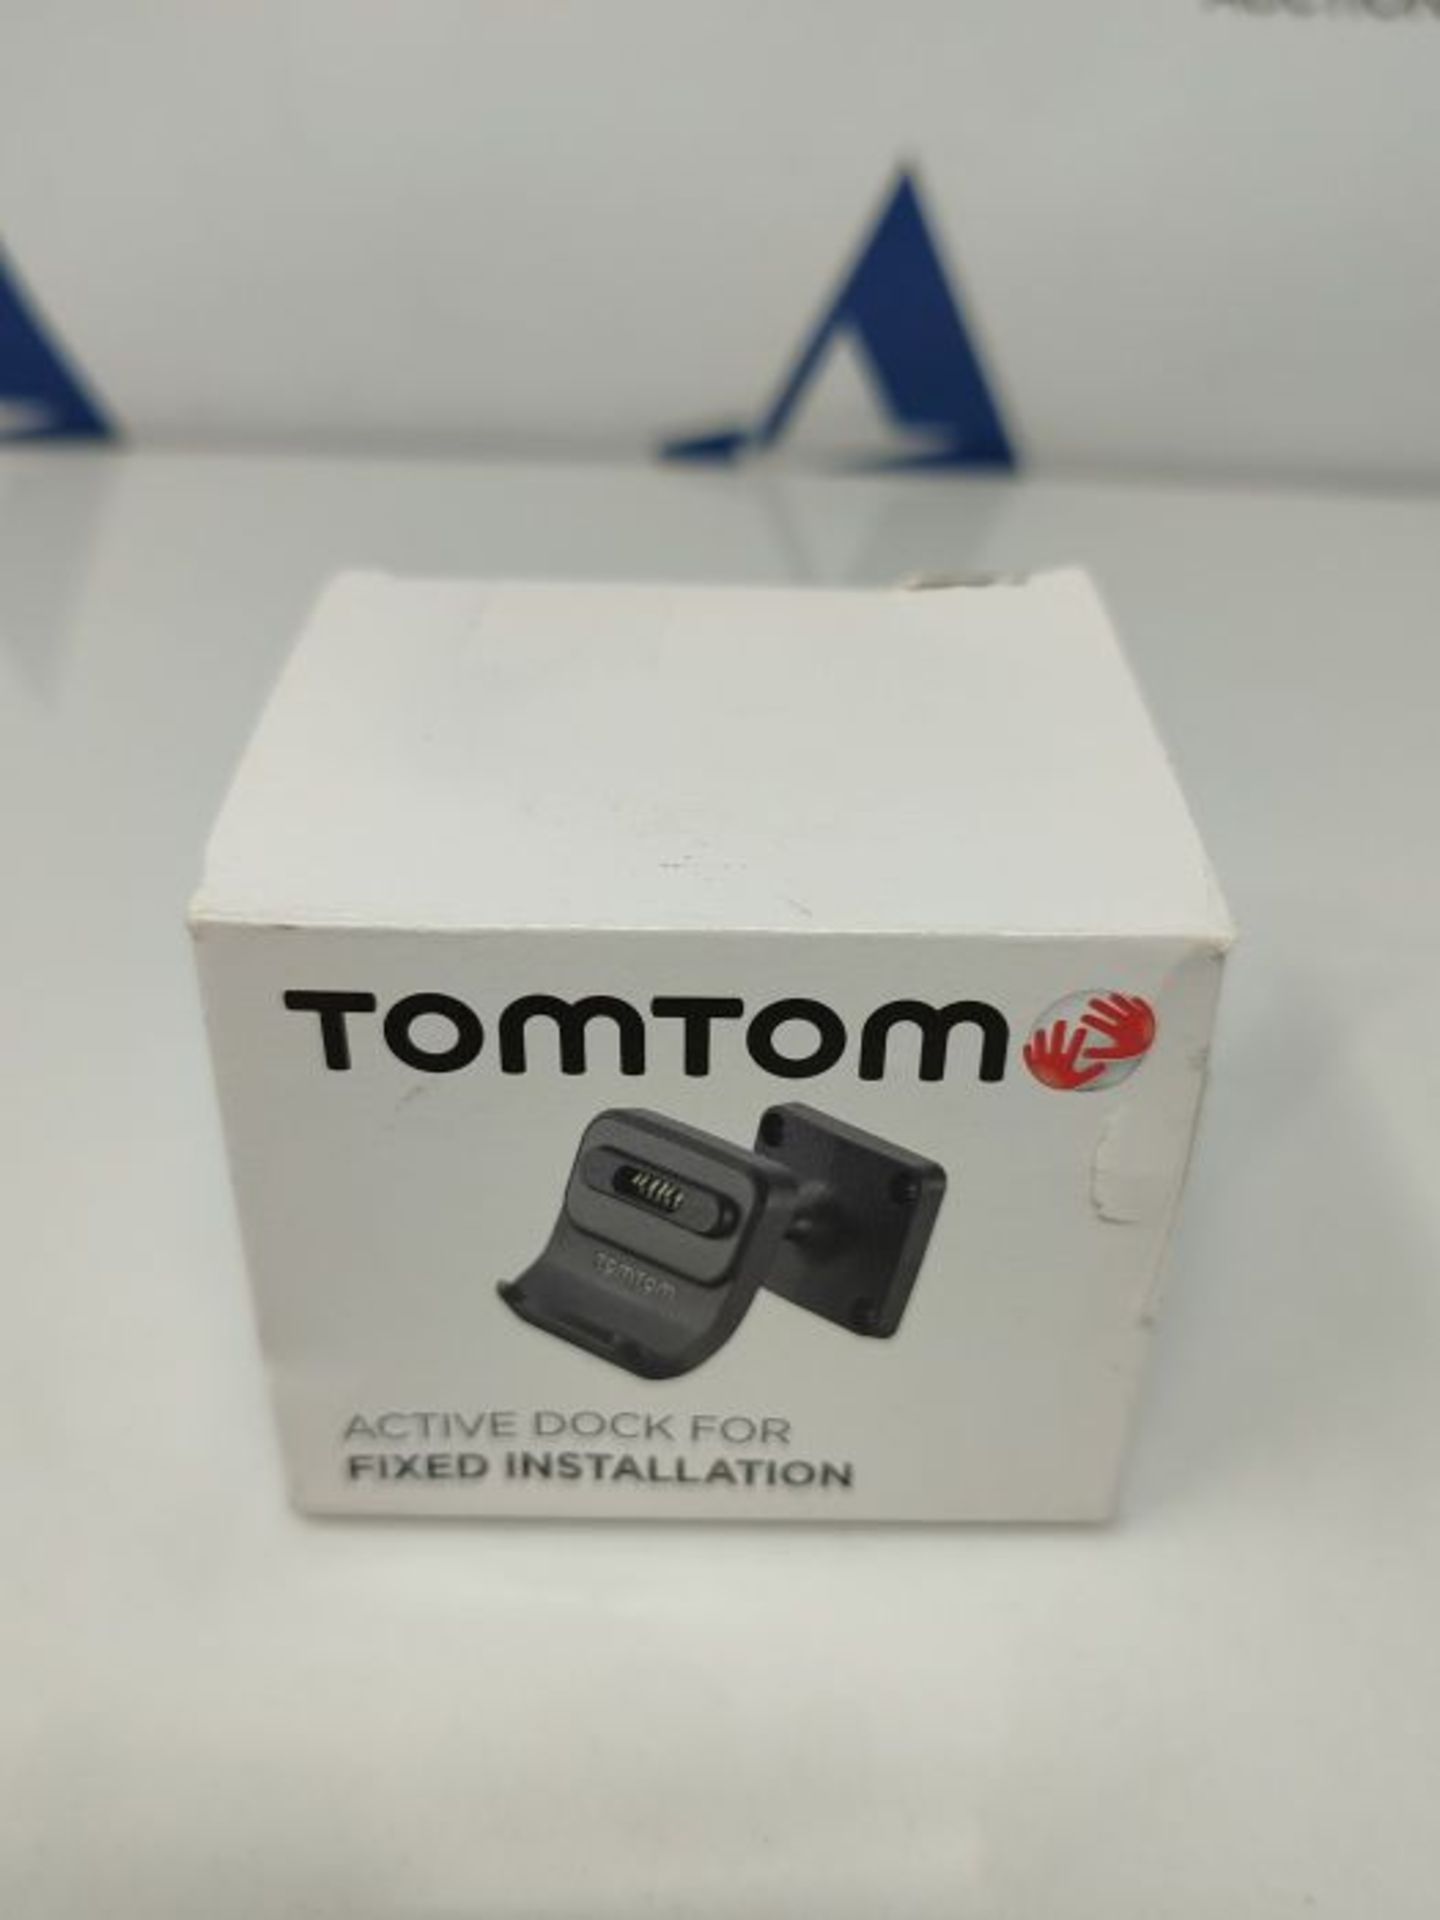 TomTom Fixed Installation - Full Kit - Image 2 of 3